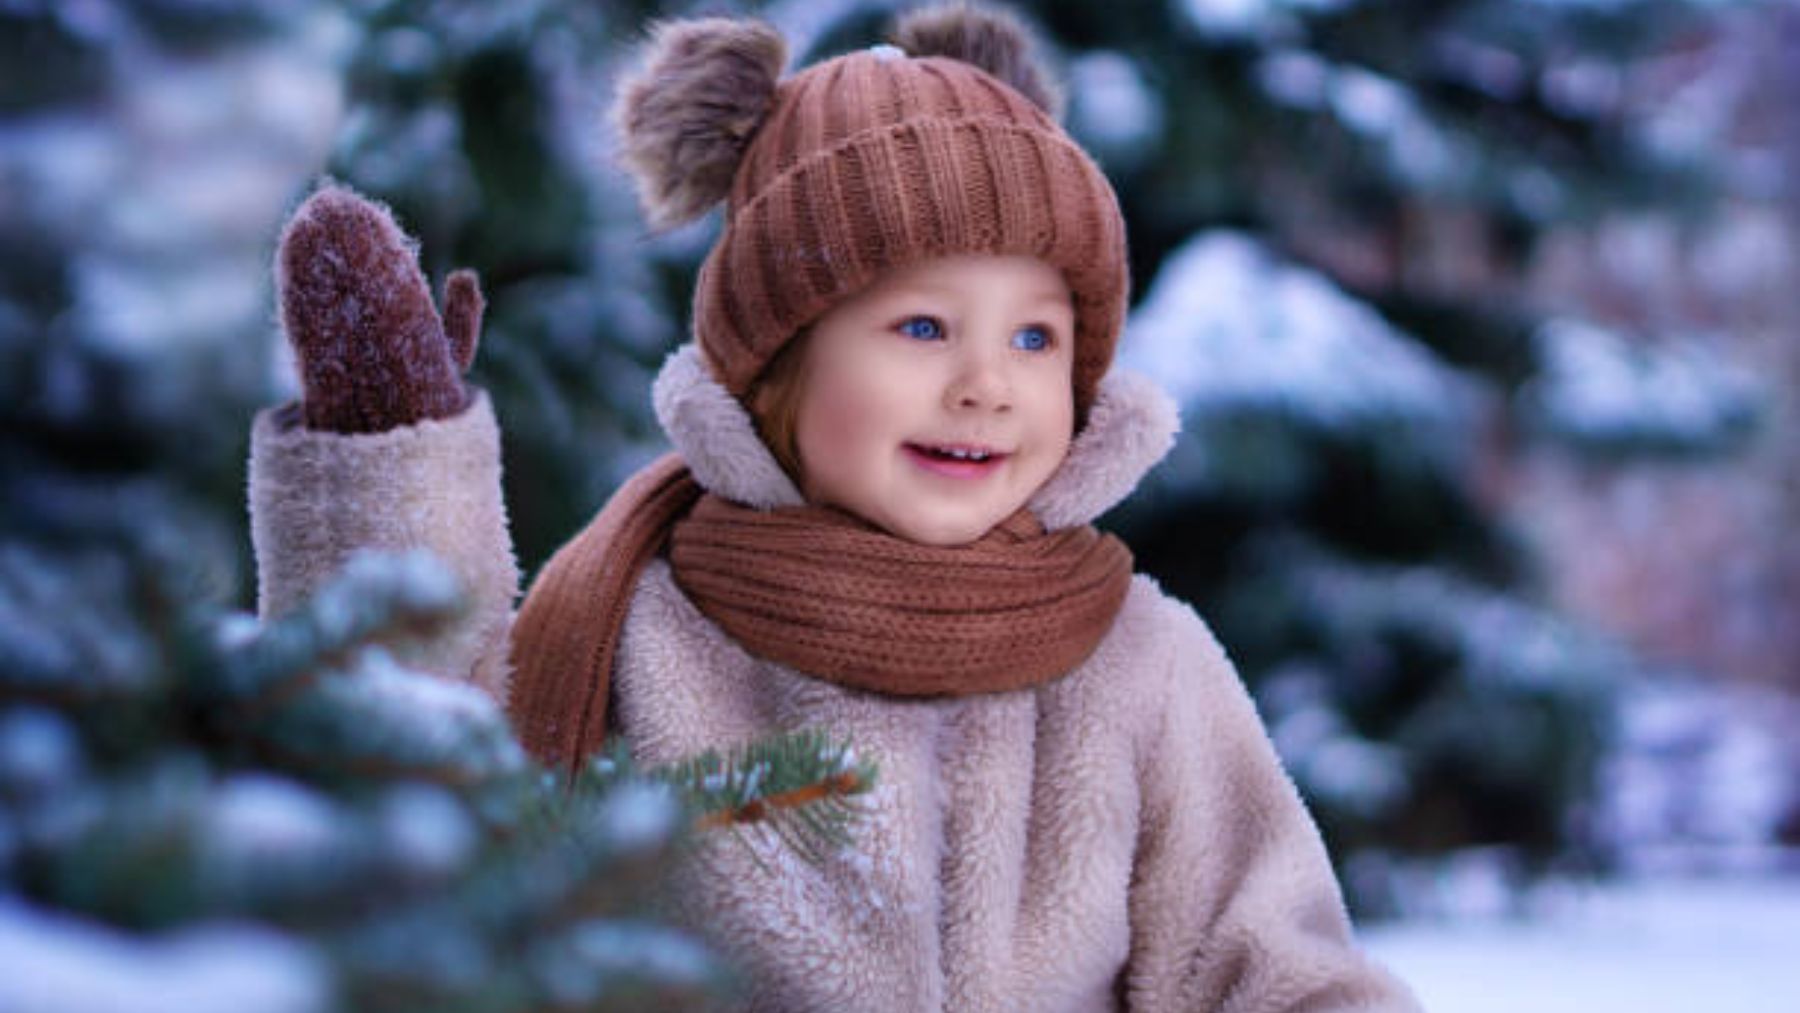 https://okdiario.com/img/2022/11/14/como-vestir-a-los-ninos-en-invierno-consejos-de-ropa.jpg